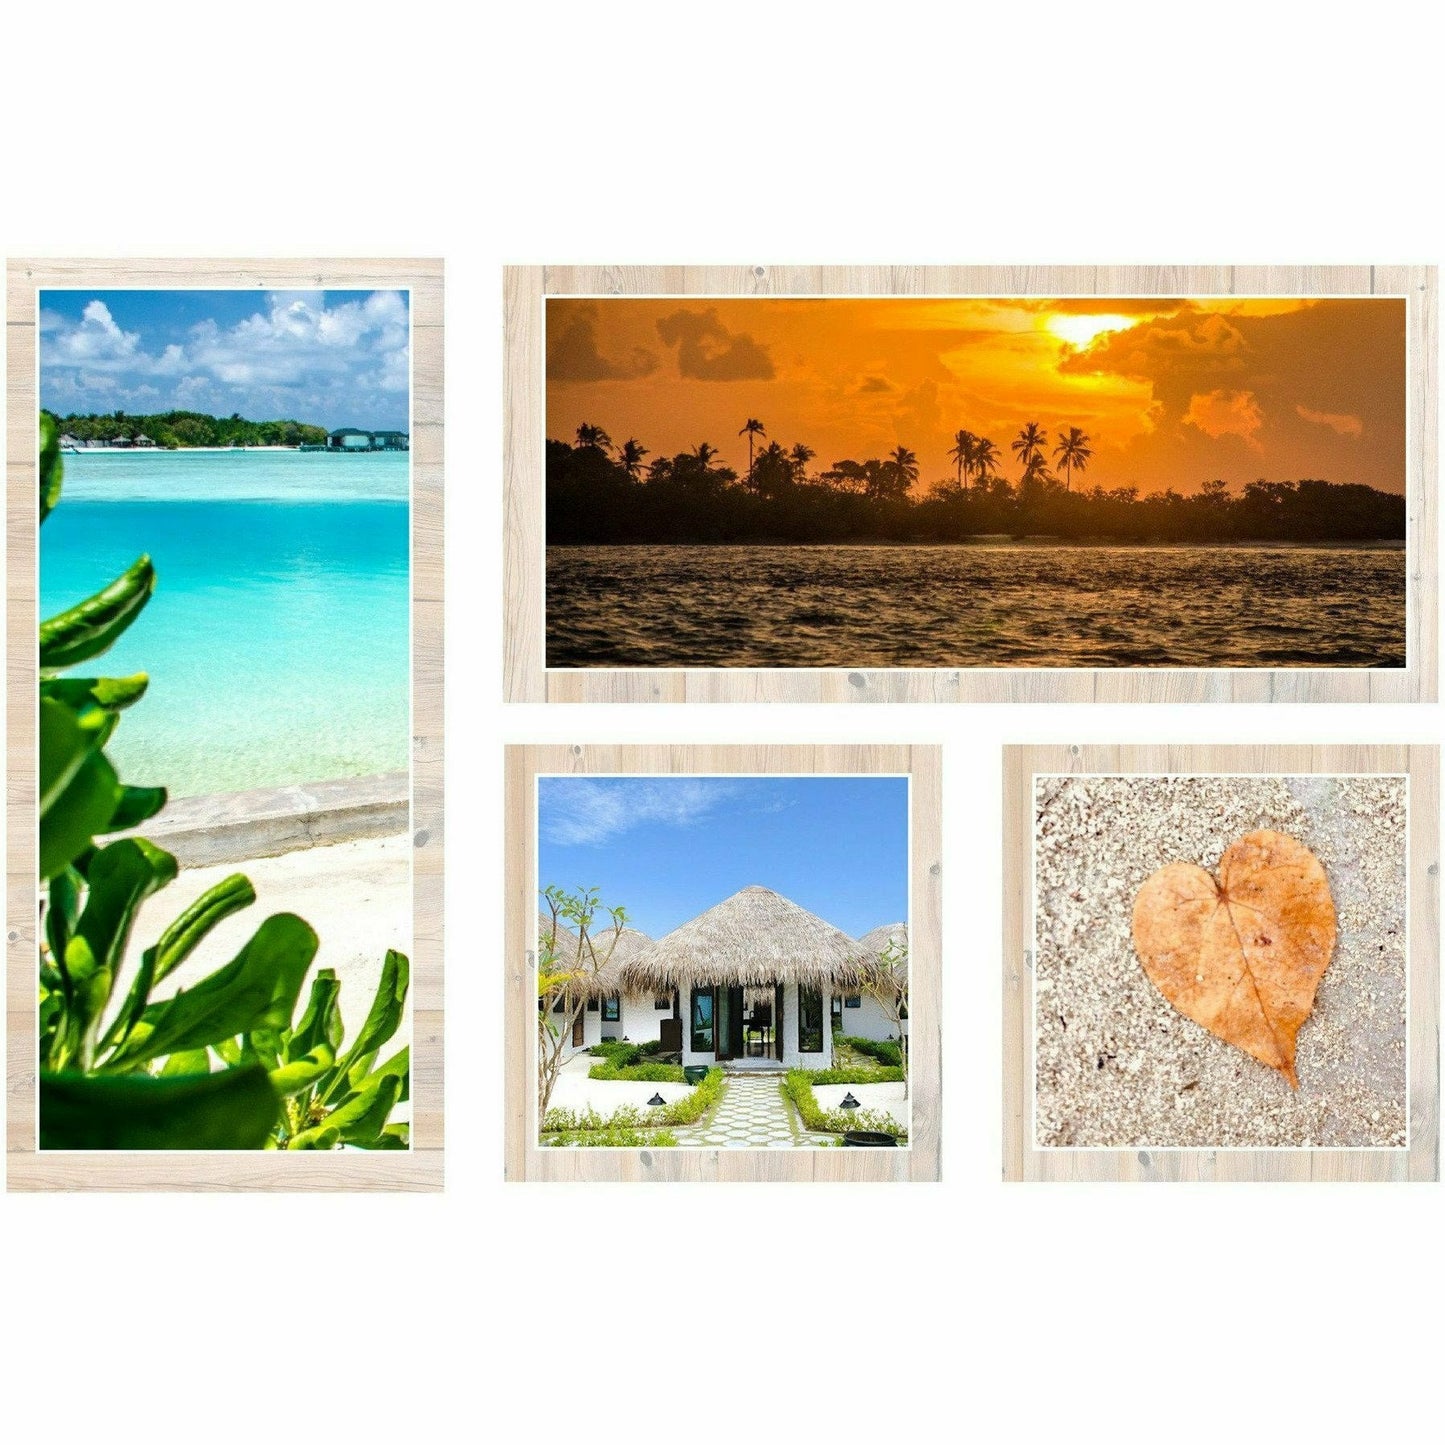 Hudhuranfushi Surf Resort - Ocean Villas | 7 Nights